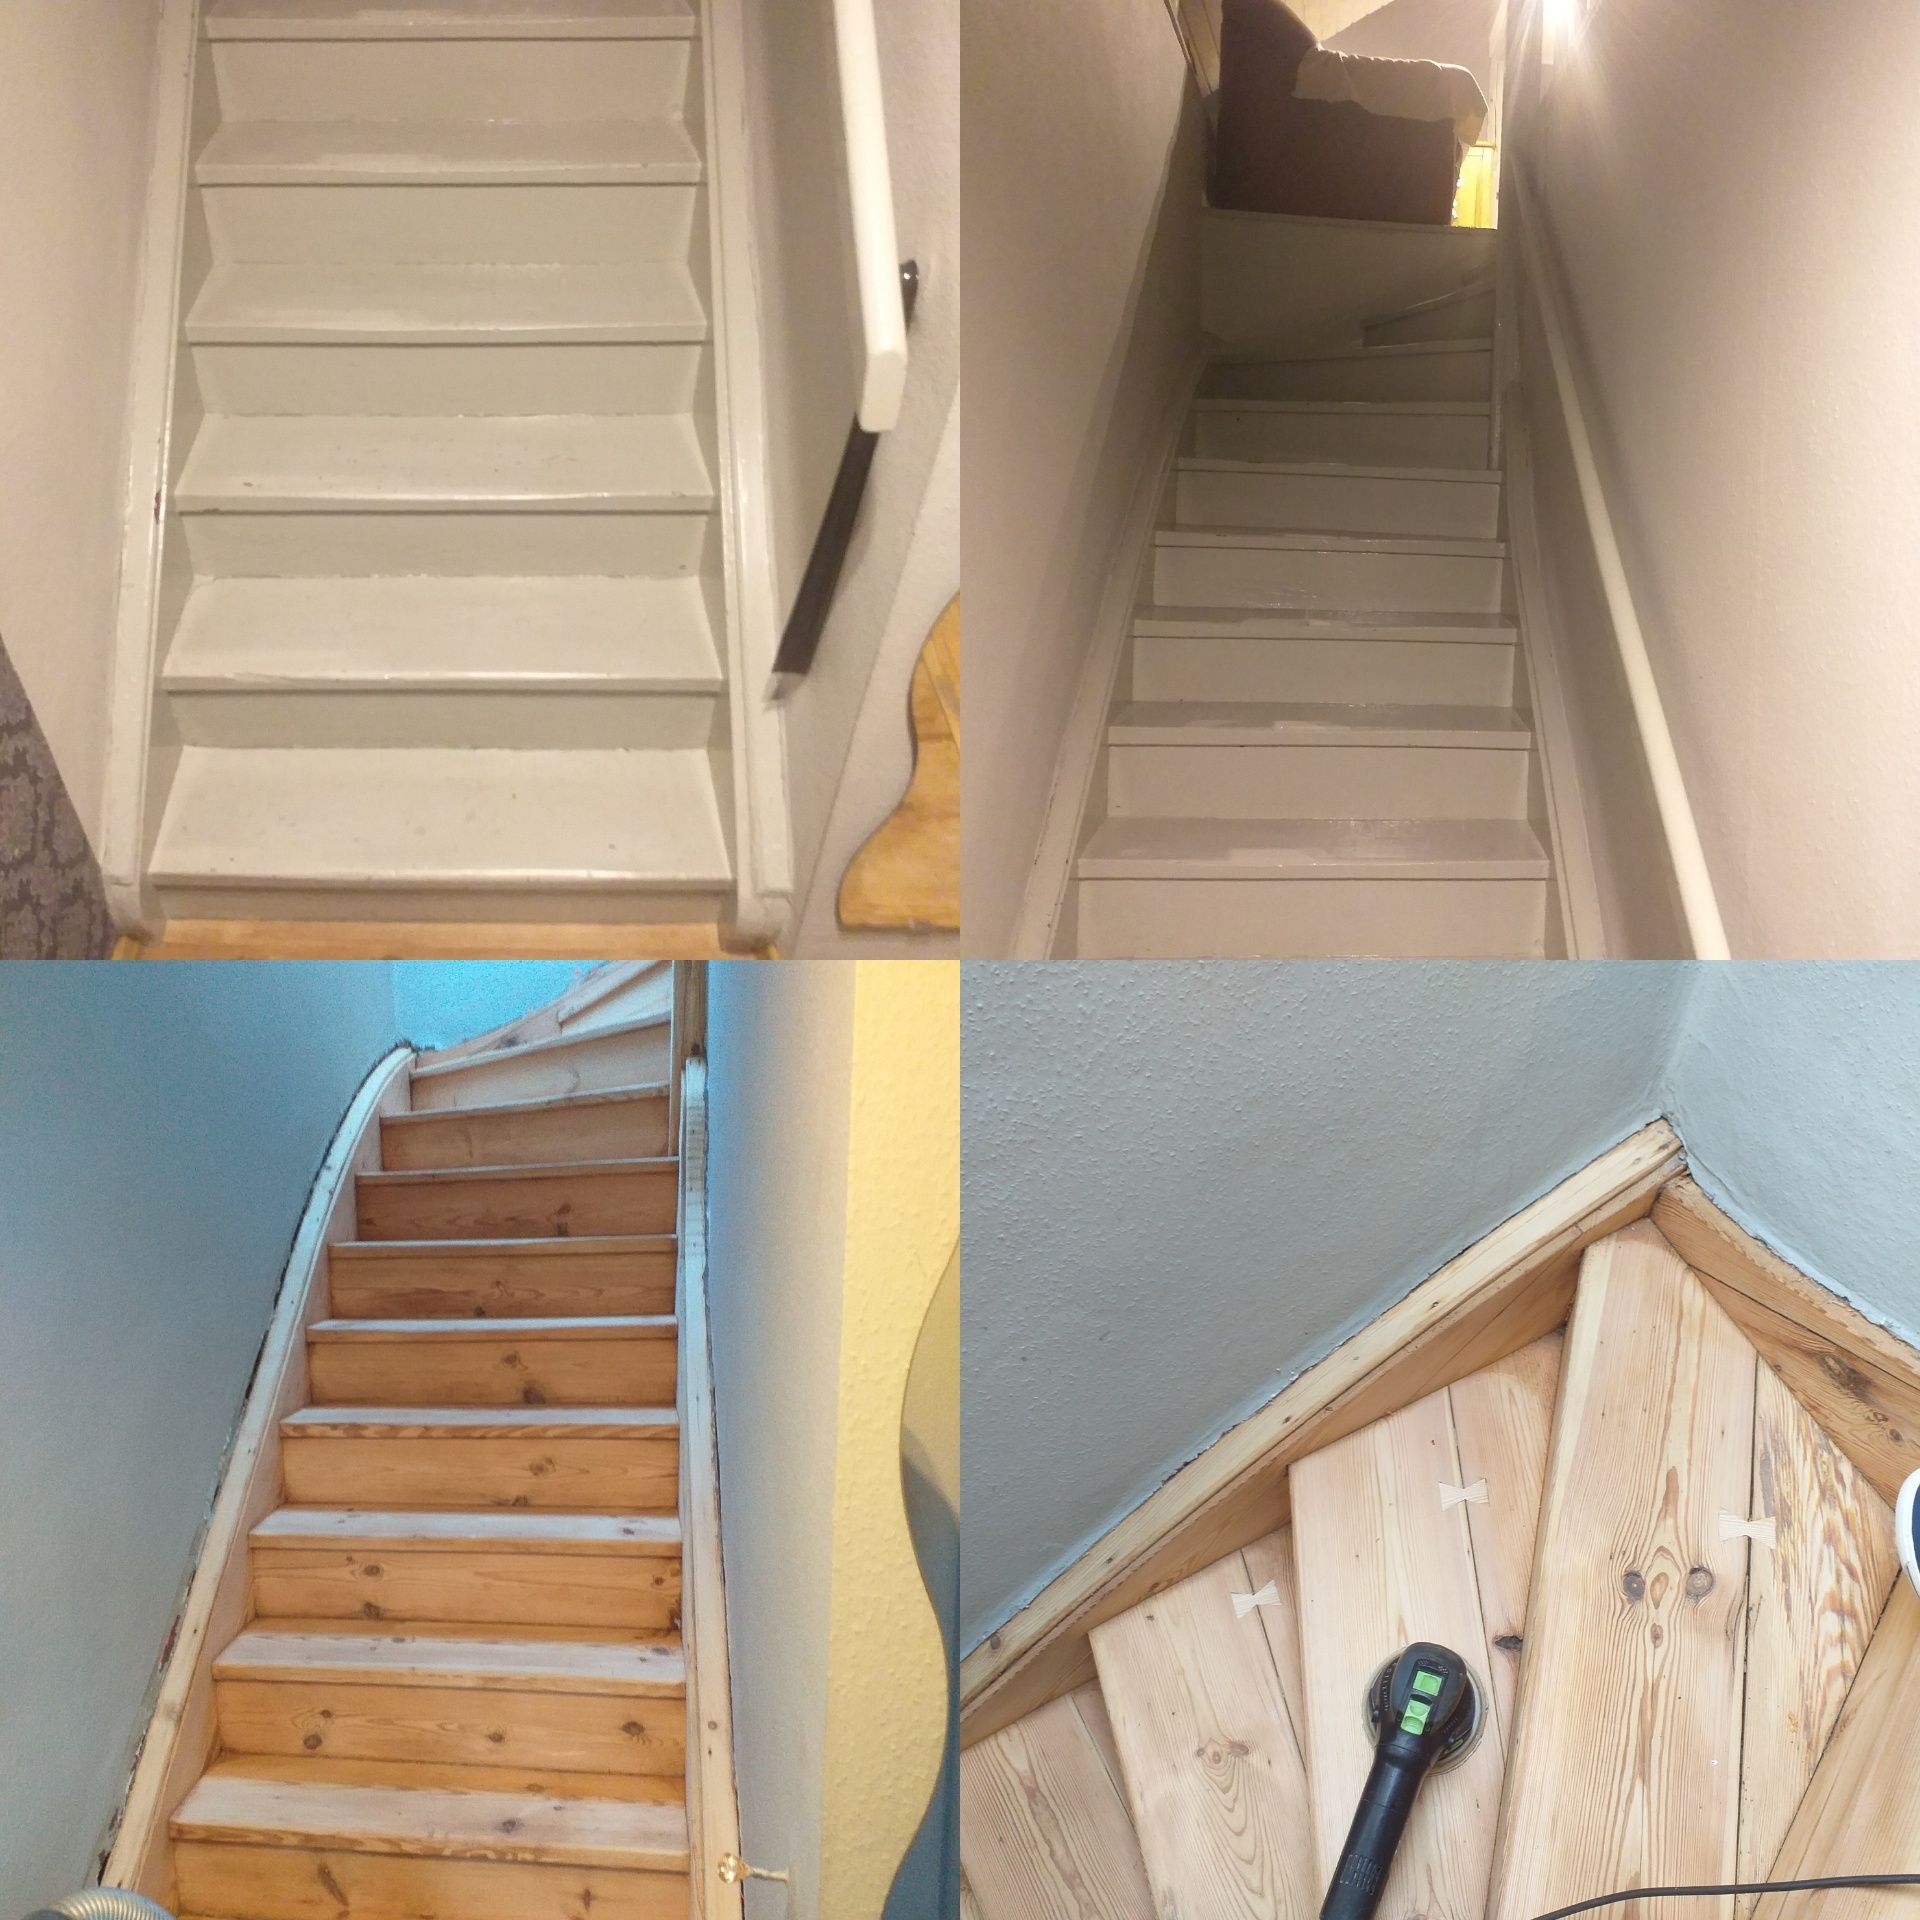 Renowacja cyklinowanie schodow nakladki schodowe uslugi stolarskie